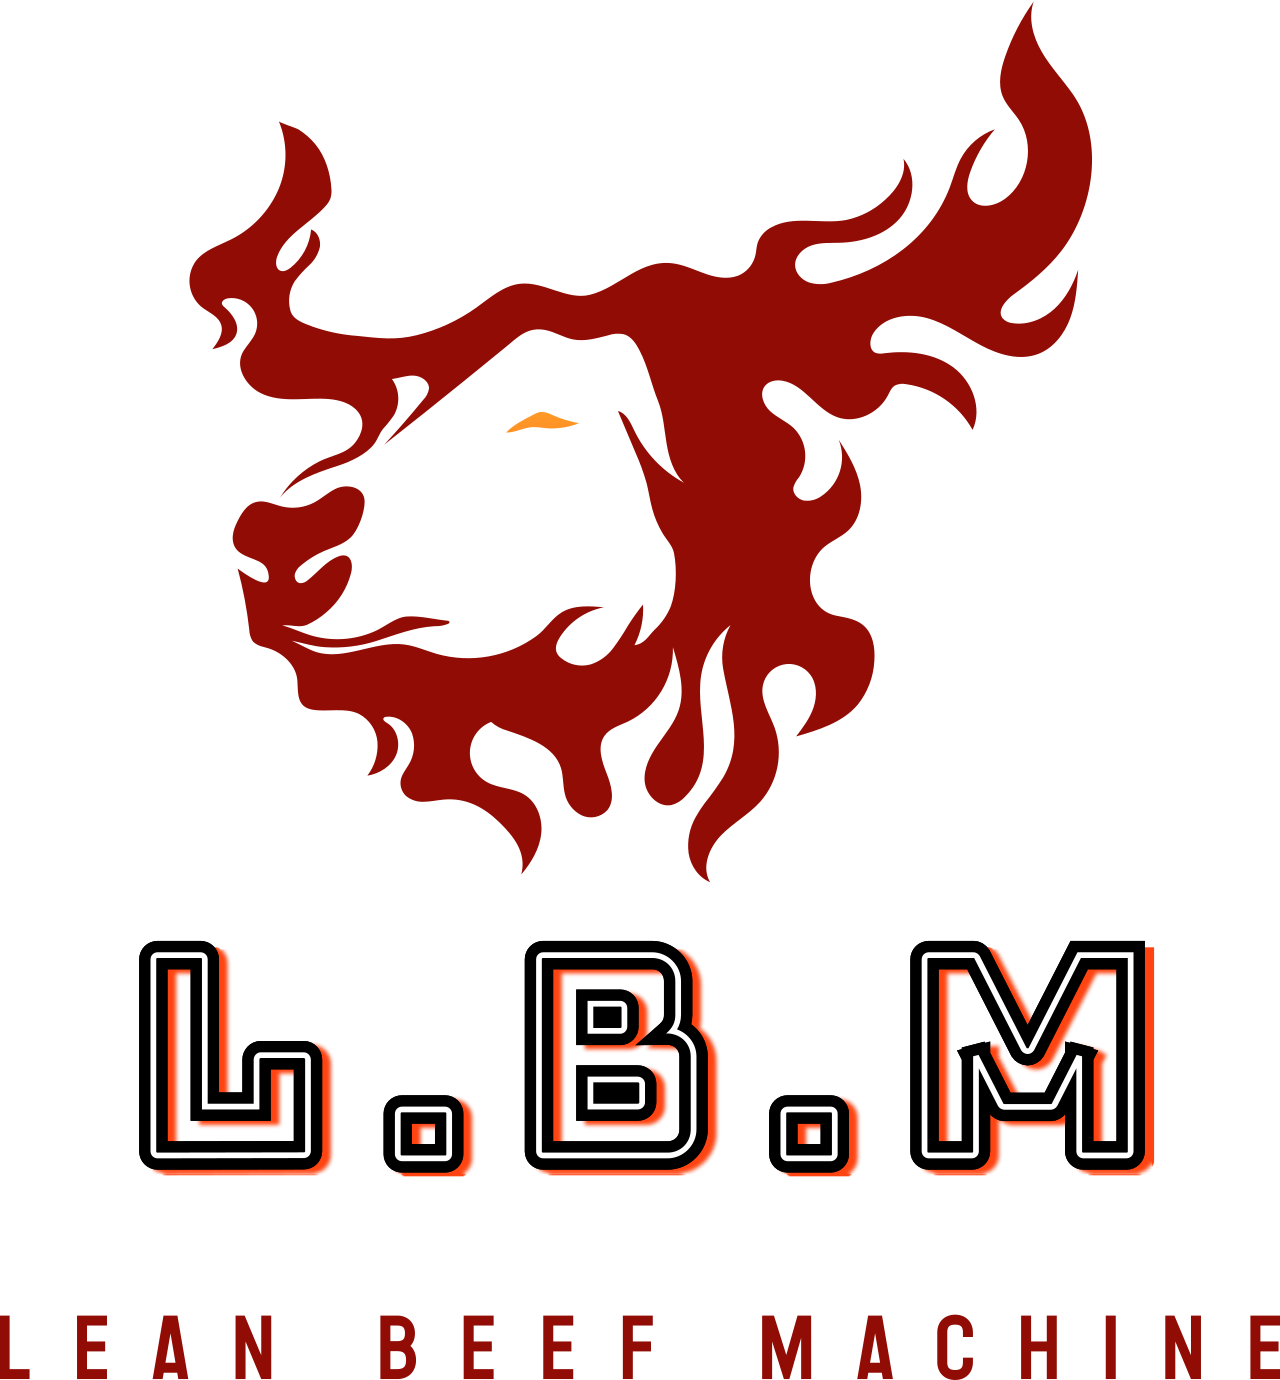 L.B.M's logo